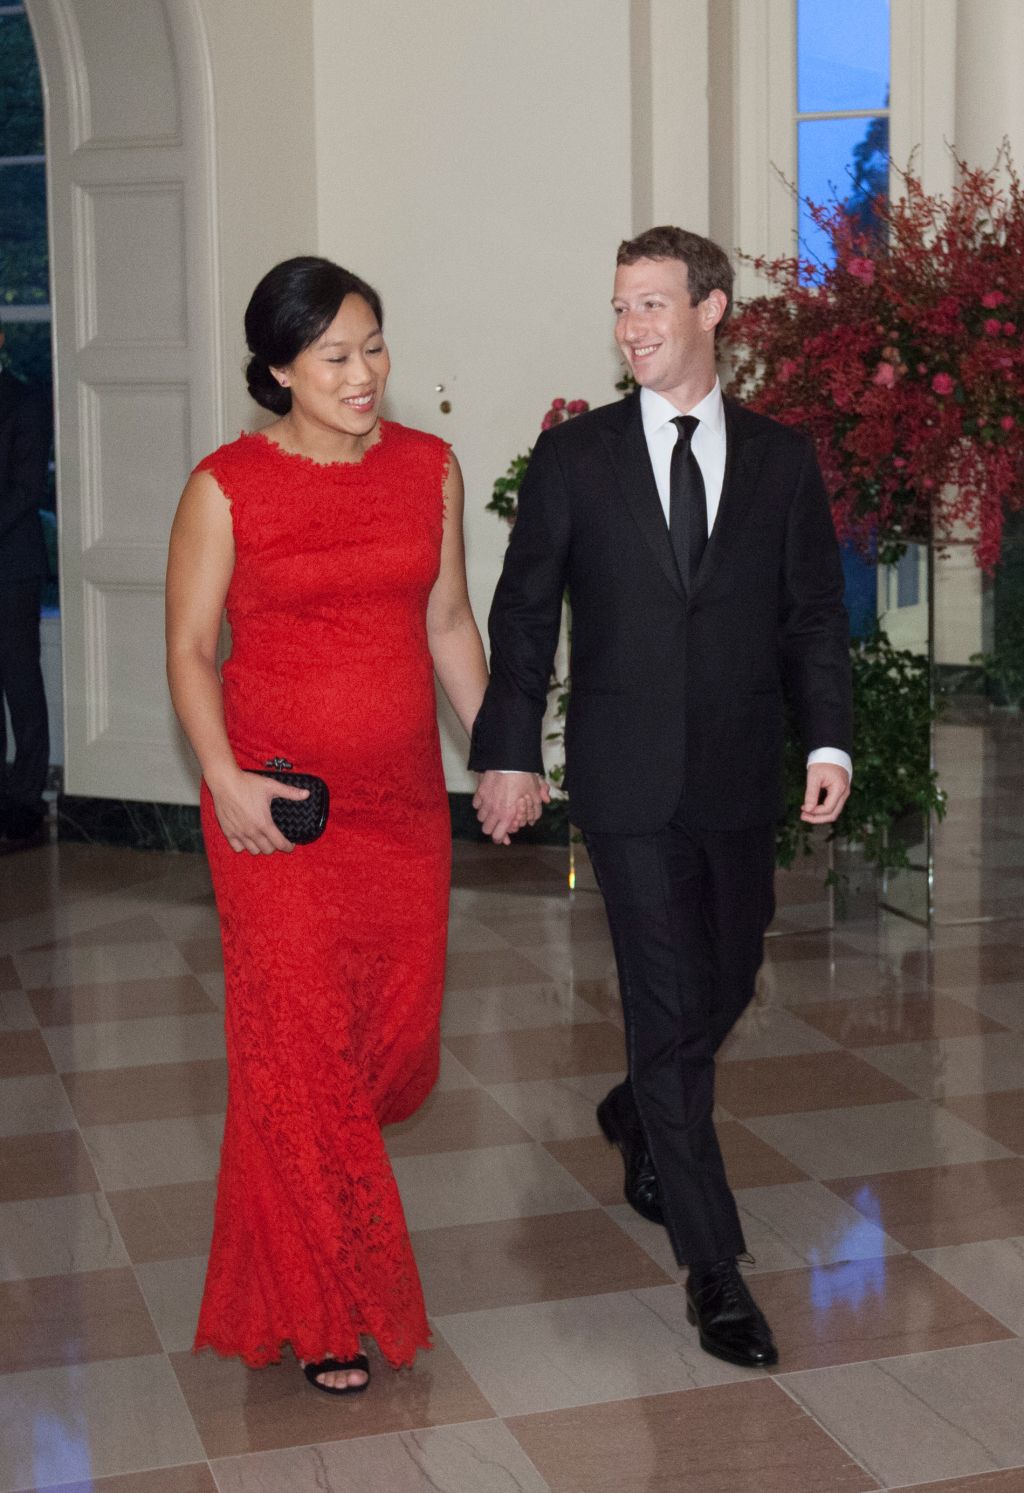 Photos: Facebook CEO Mark Zuckerberg through the years